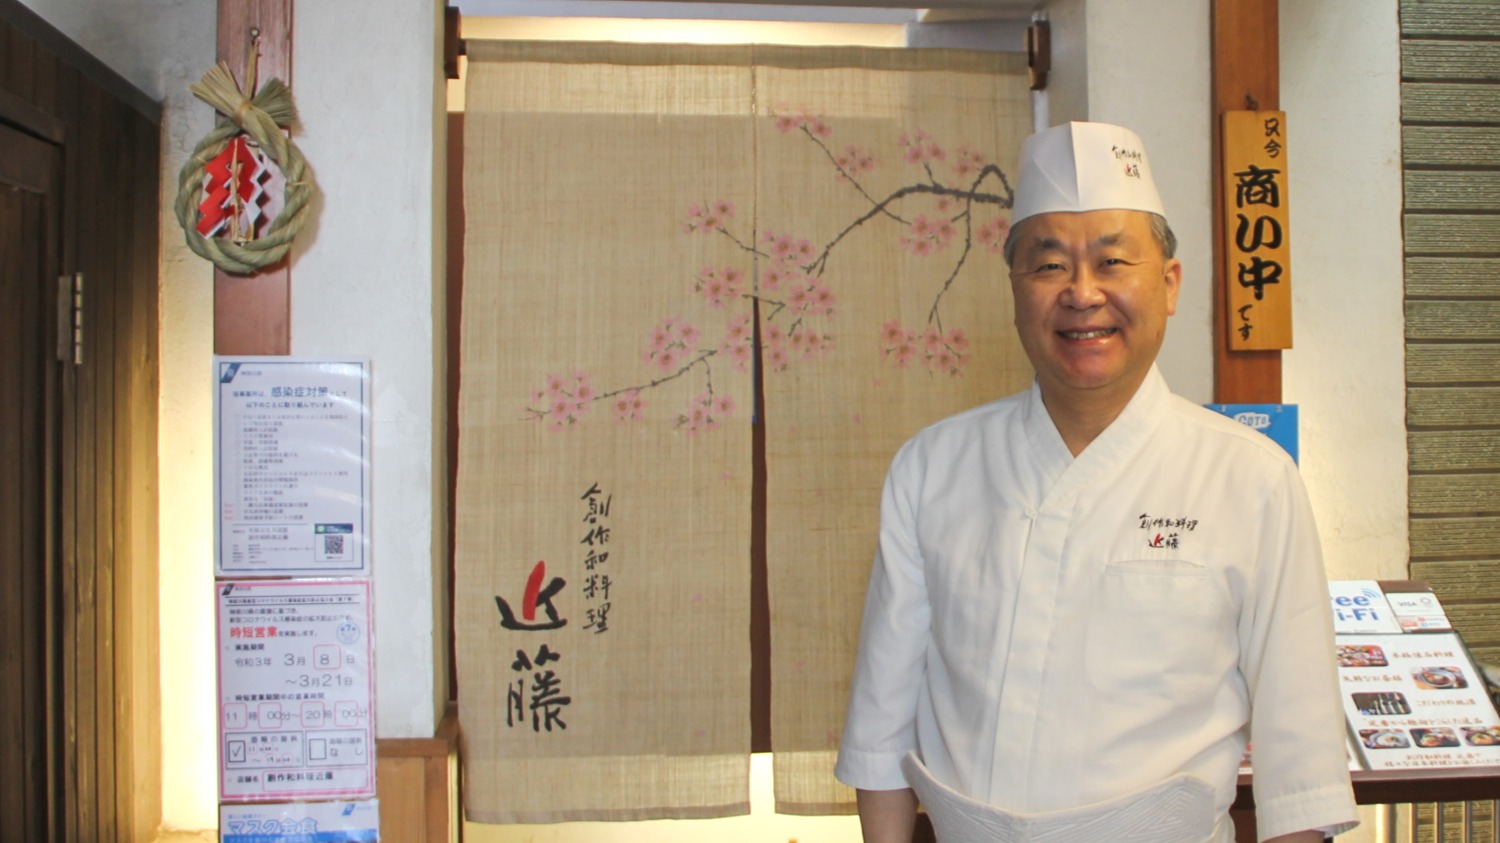 【日本料理店】創作和料理近藤の近藤様からお話しを伺いました